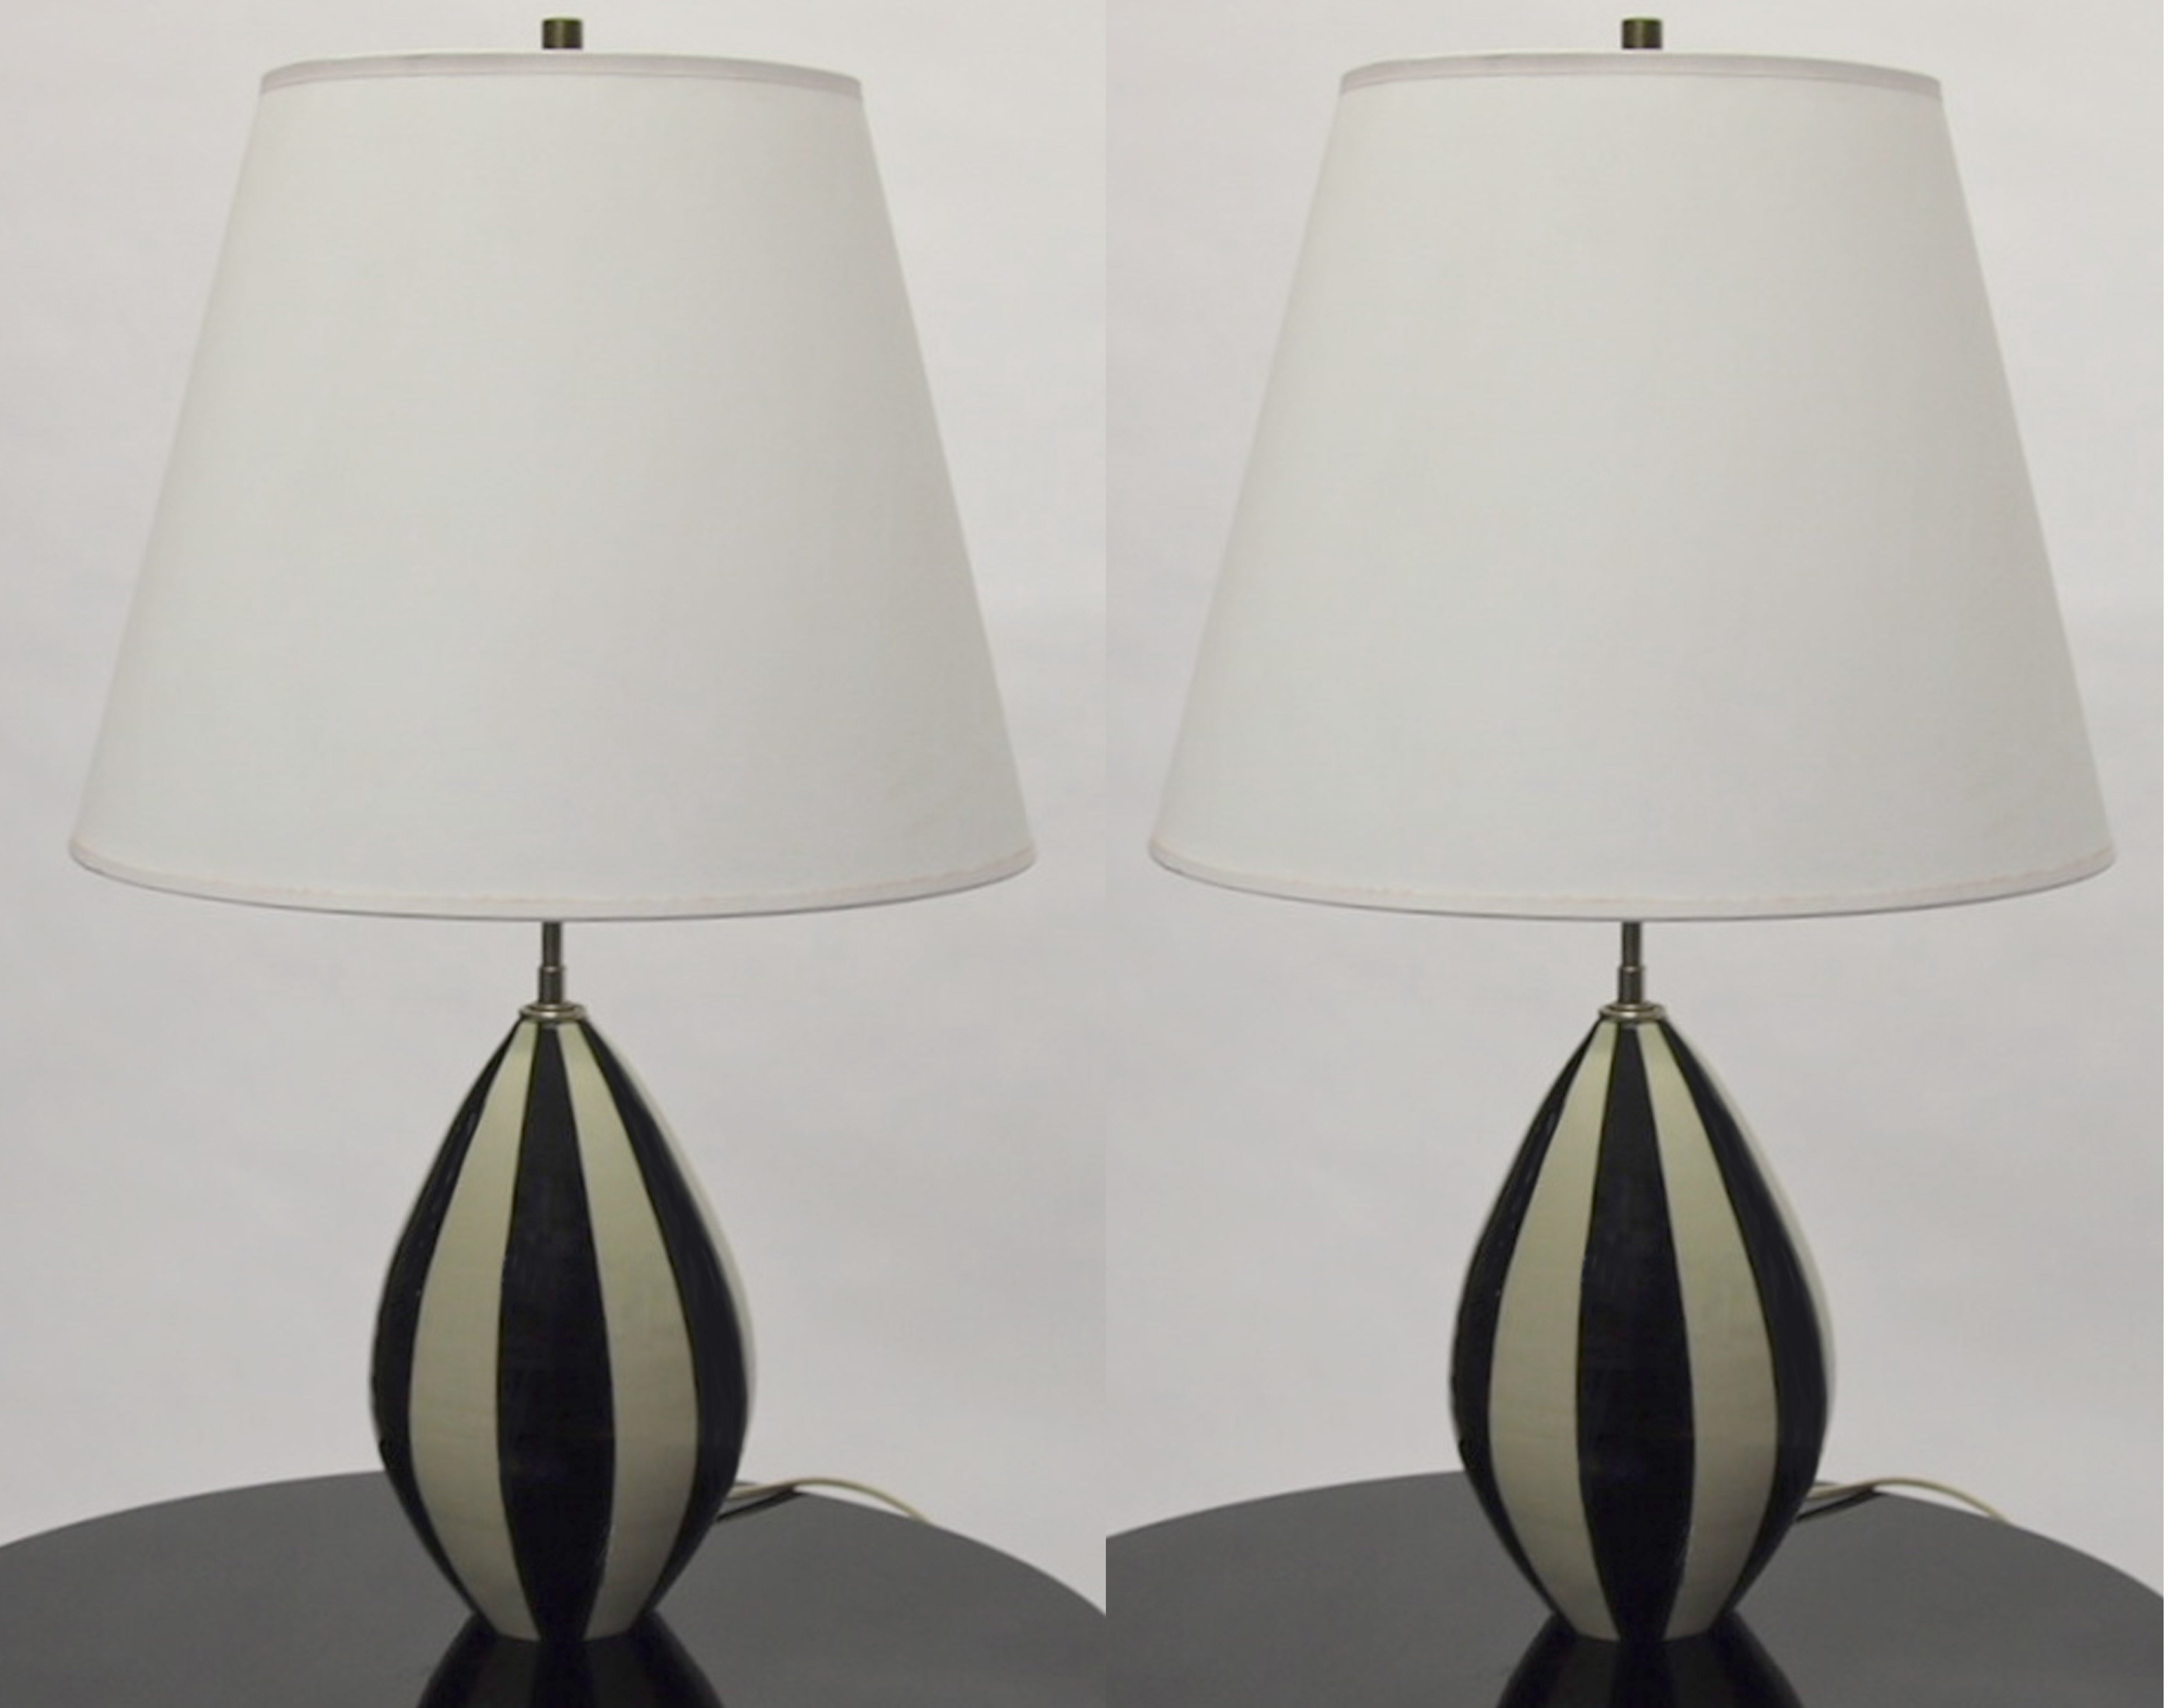 Pair of Ceramic Lamps Circa 1960 American